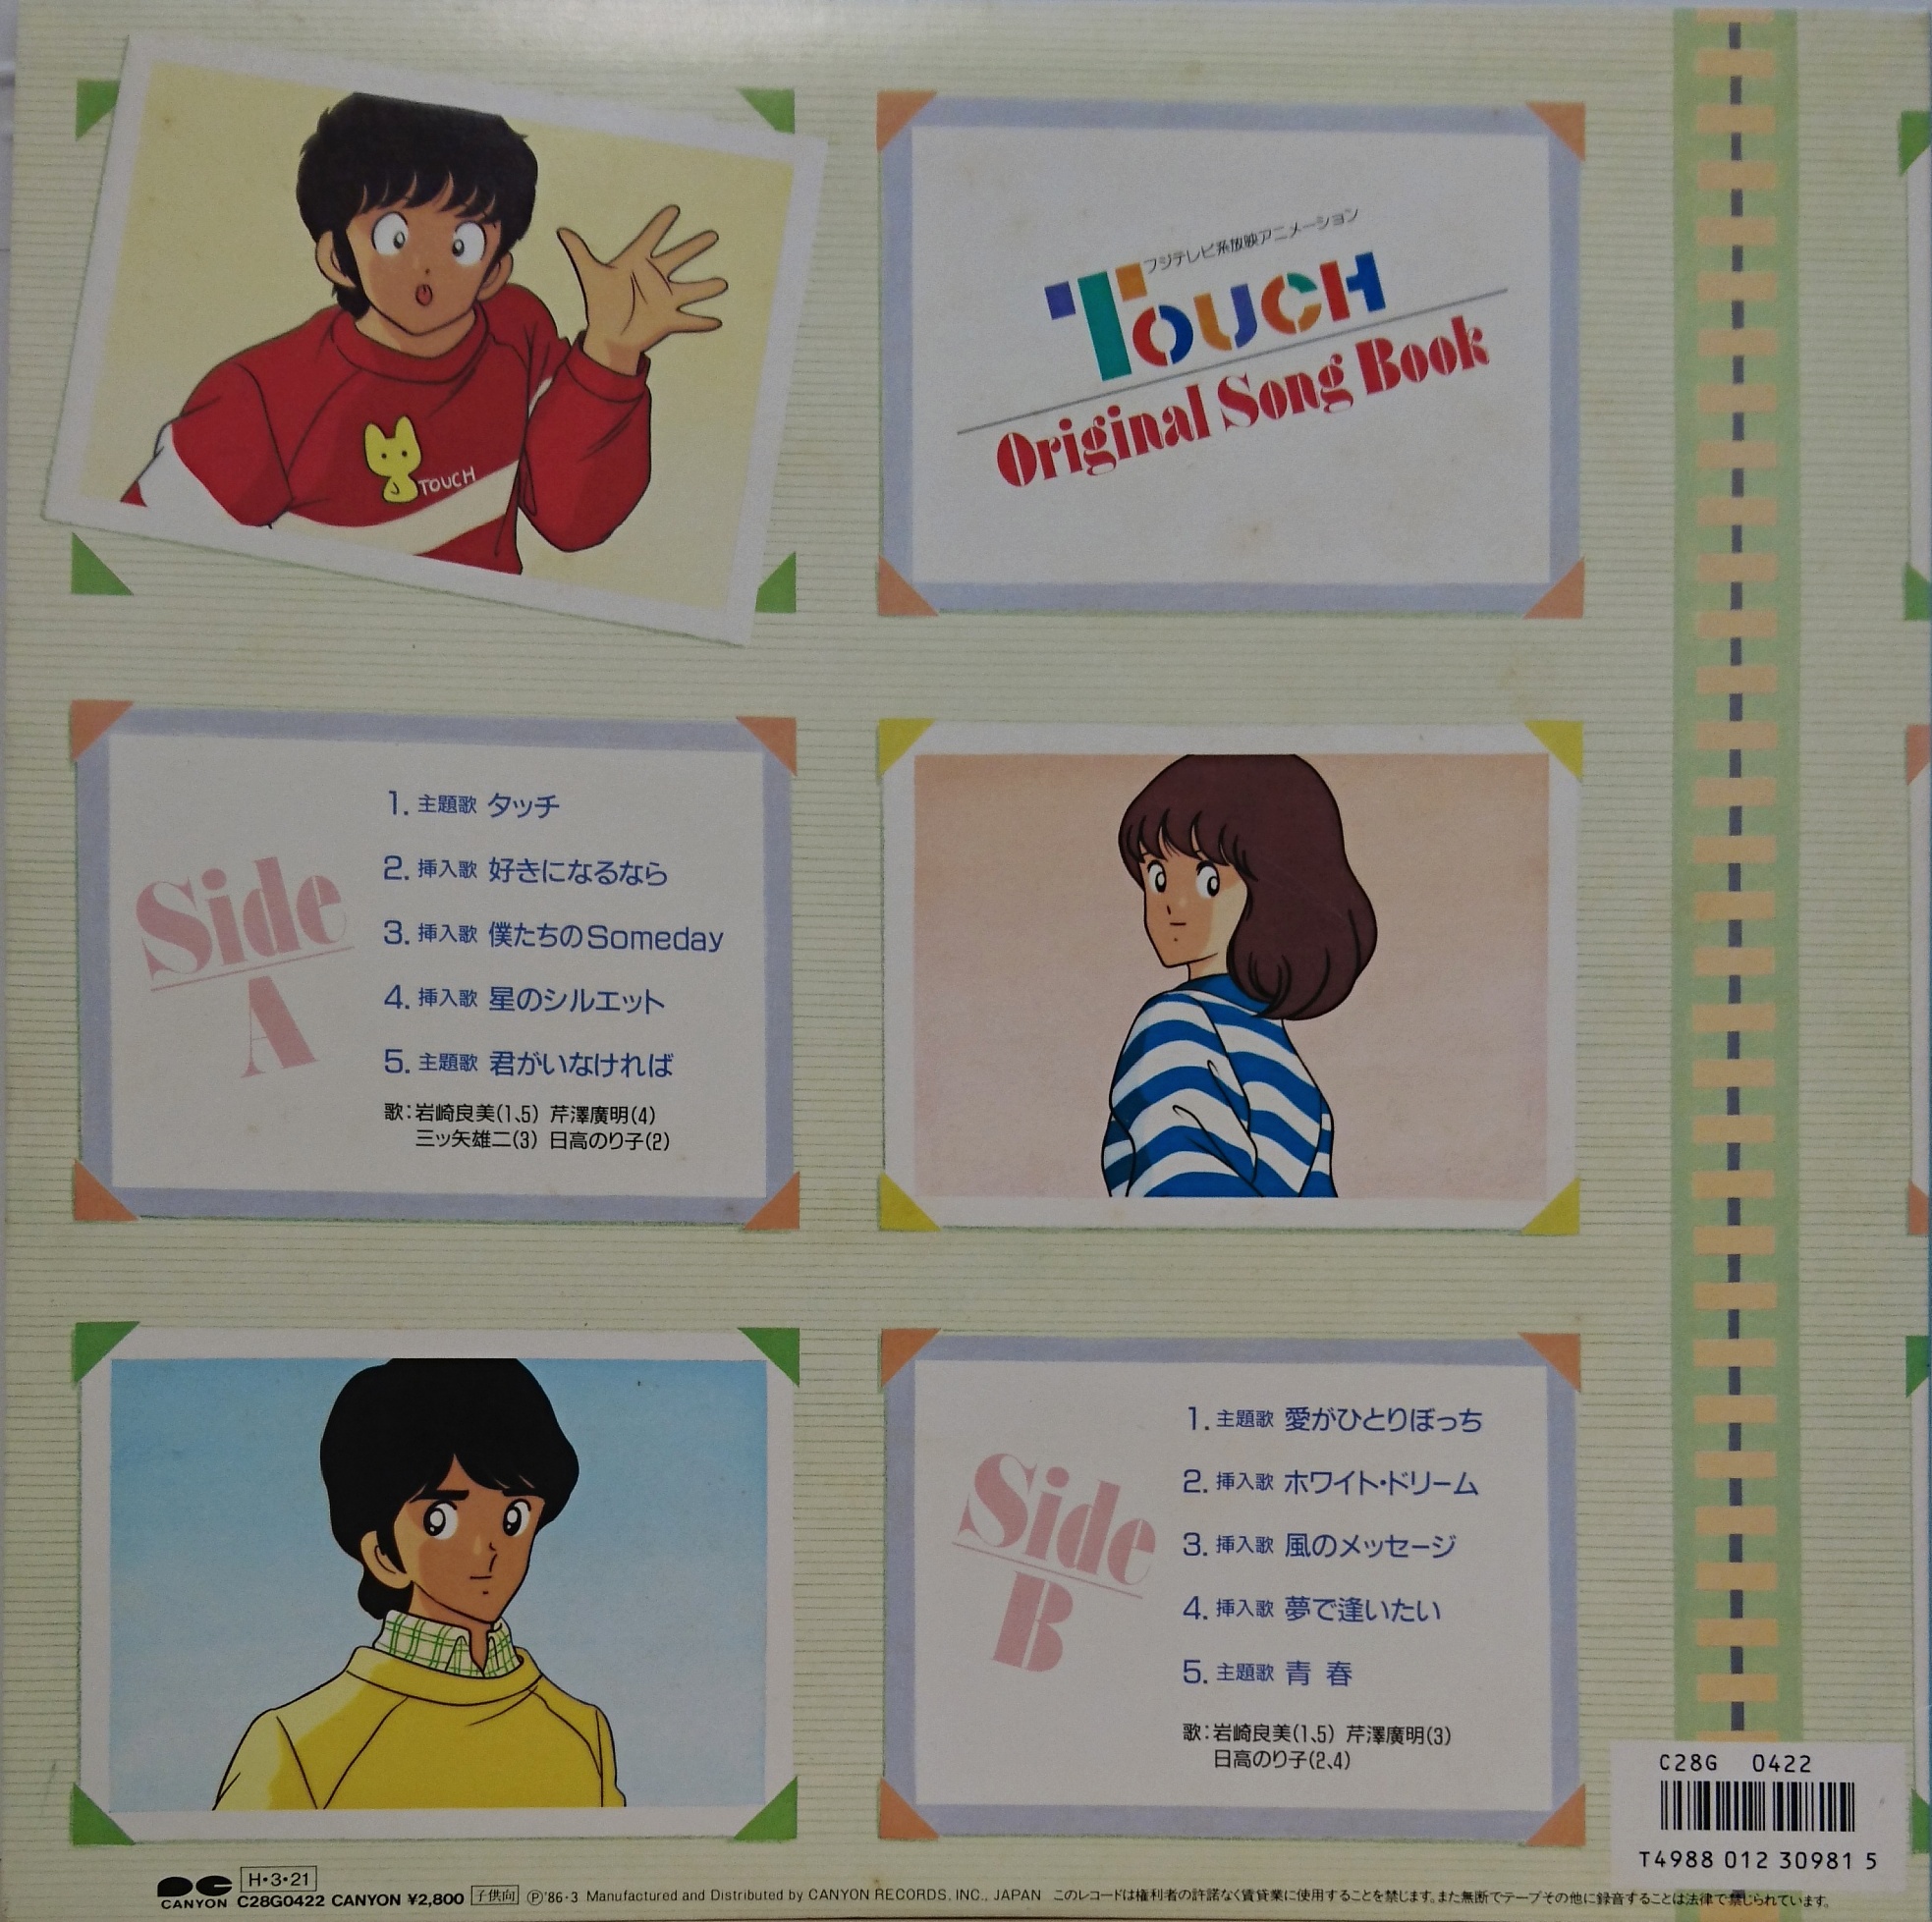 O.S.T / タッチ Original Song Book | 中古レコード通販・買取のアカル・レコーズ